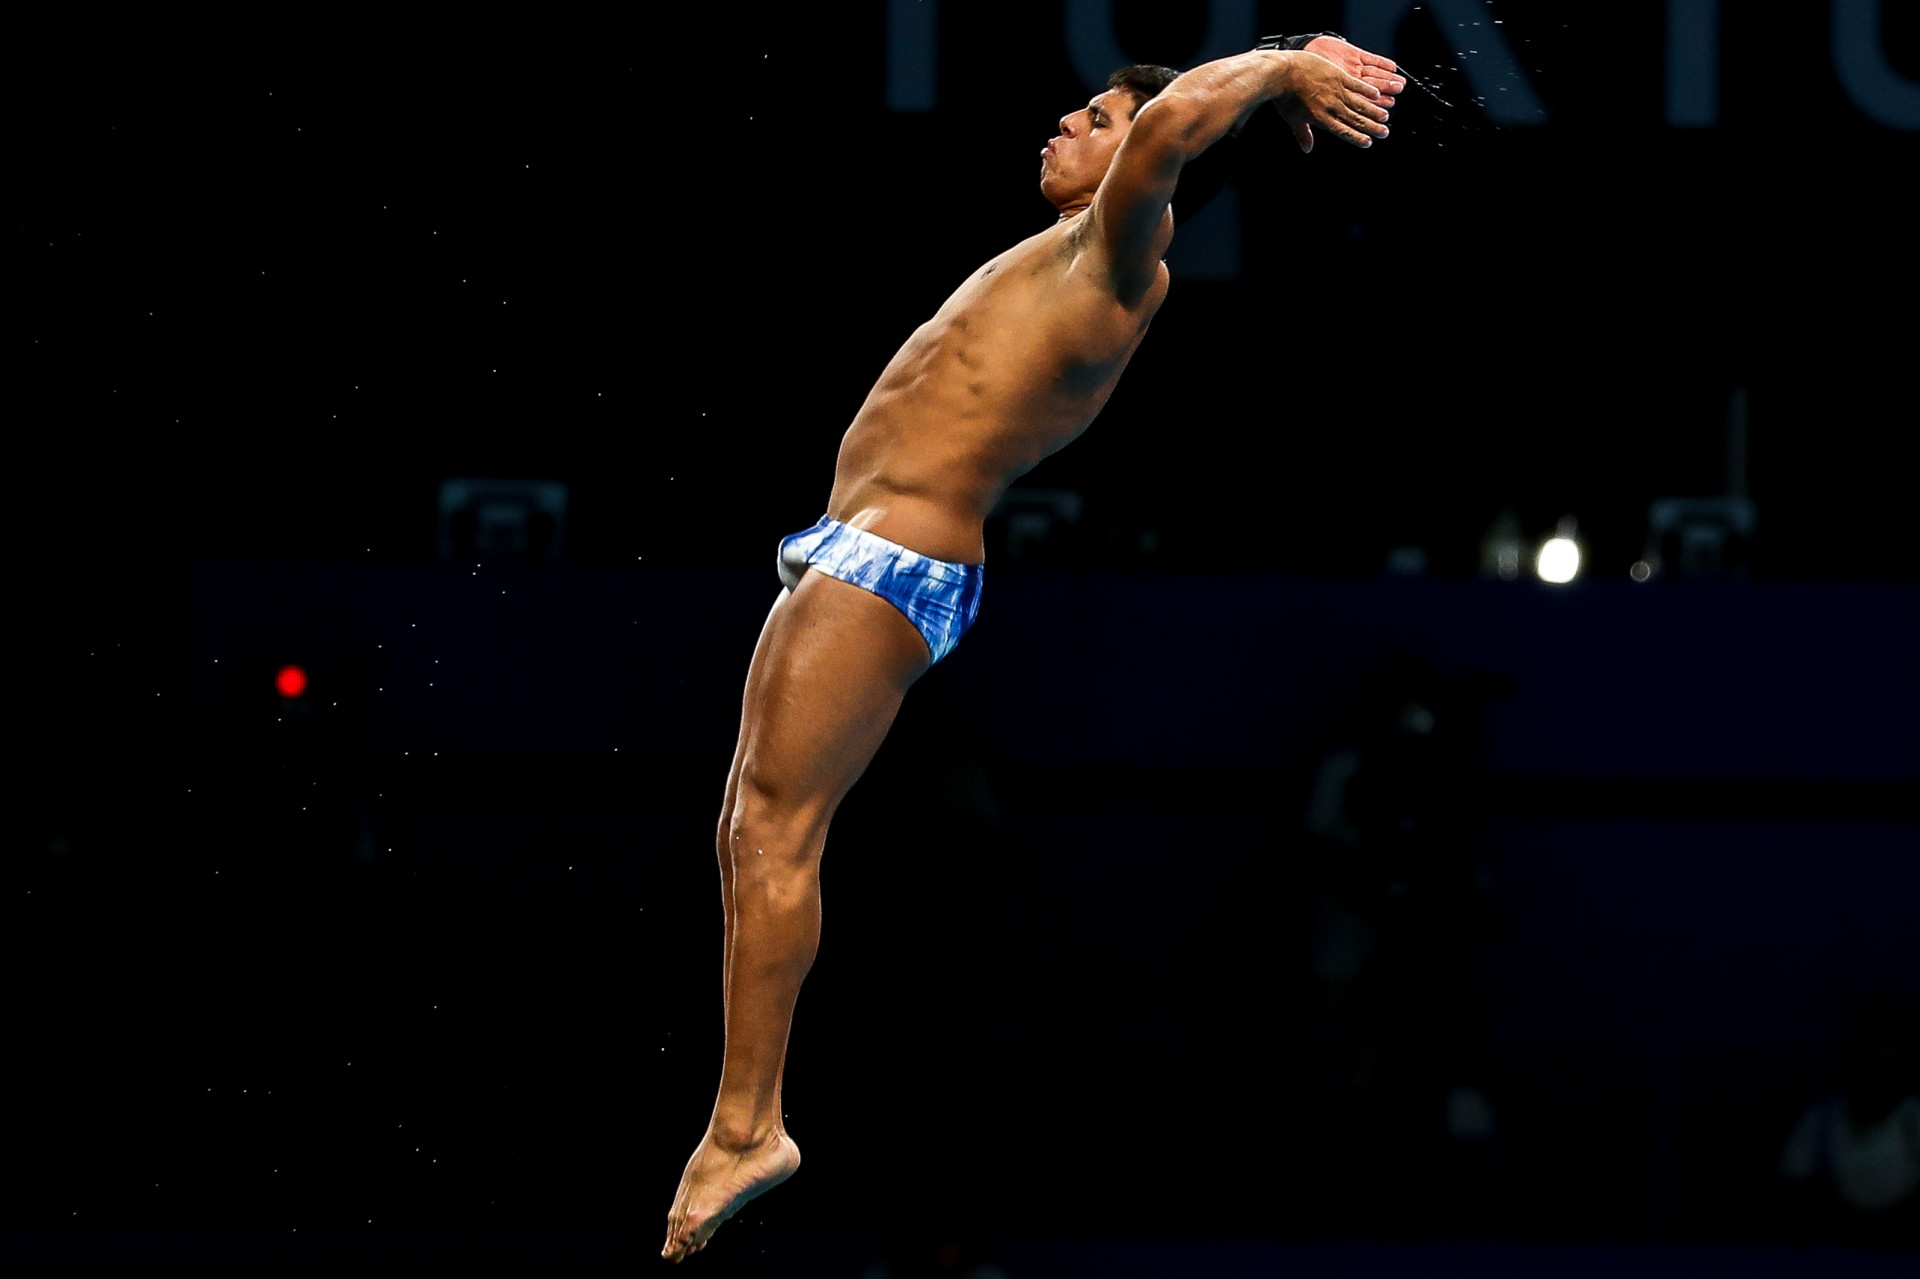 Kawan Pereira busca repetir éxito olímpico en el mundo de los deportes acuáticos |  marcello-romano